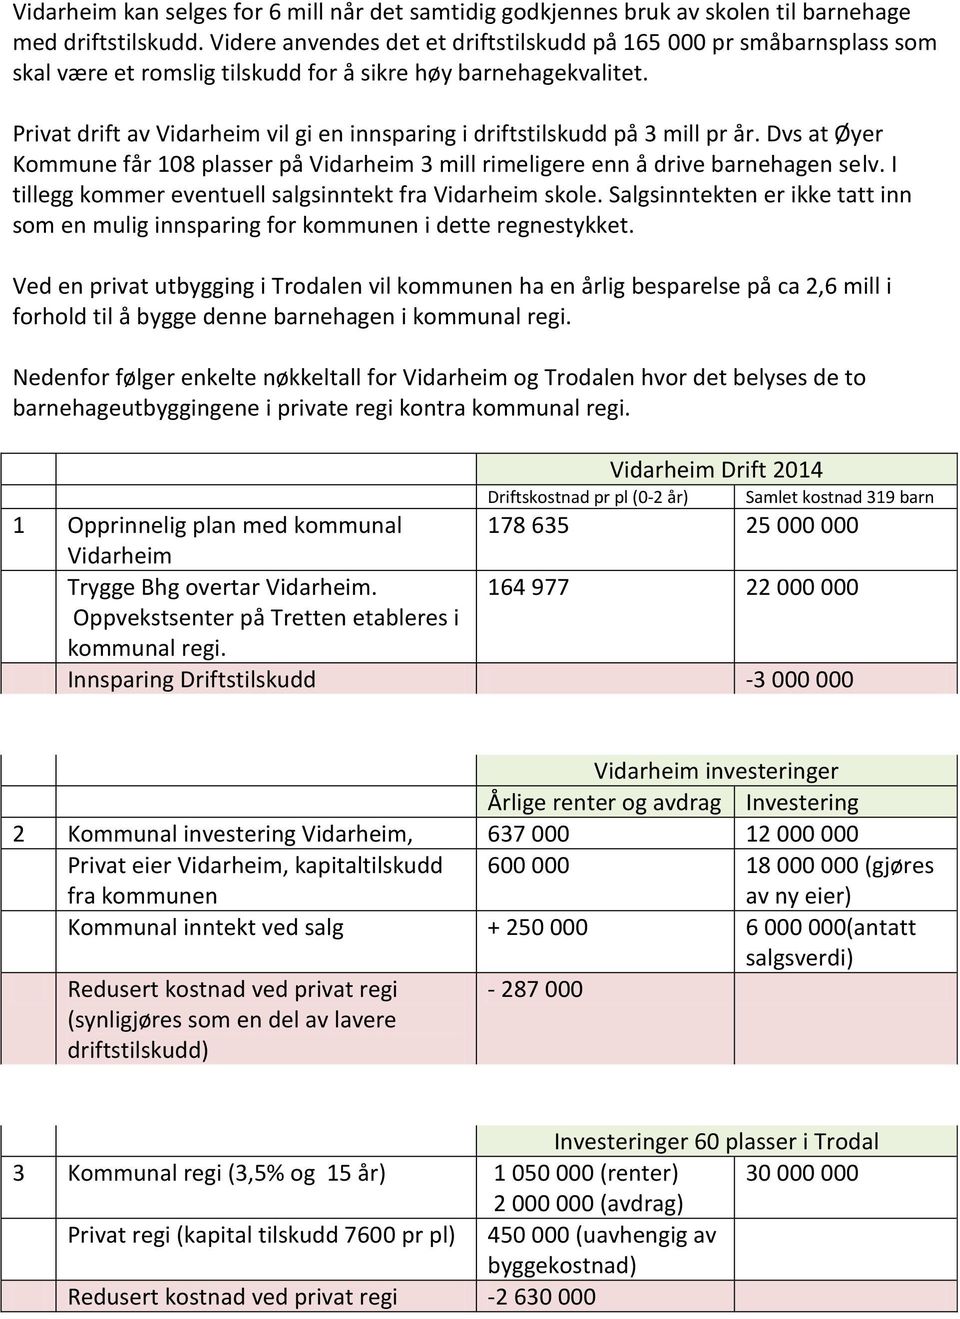 Privat drift av Vidarheim vil gi en innsparing i driftstilskudd på 3 mill pr år. Dvs at Øyer Kommune får 108 plasser på Vidarheim 3 mill rimeligere enn å drive barnehagen selv.